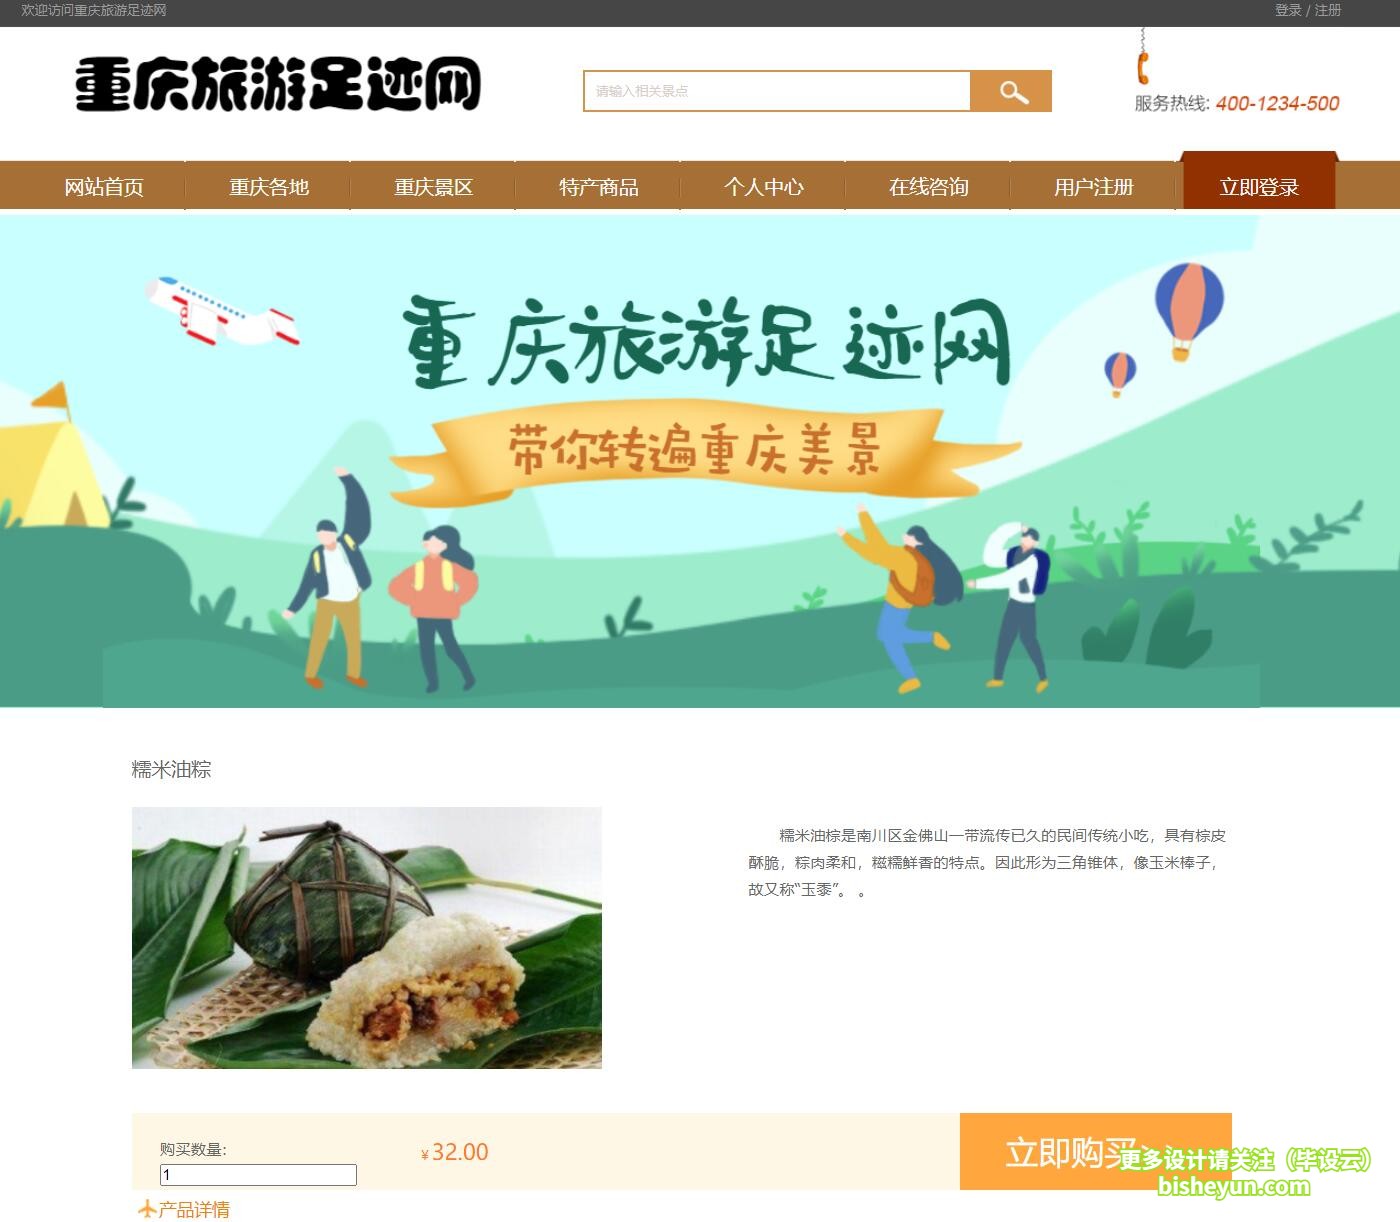 毕设云-基于php的重庆旅游网站-商品详情